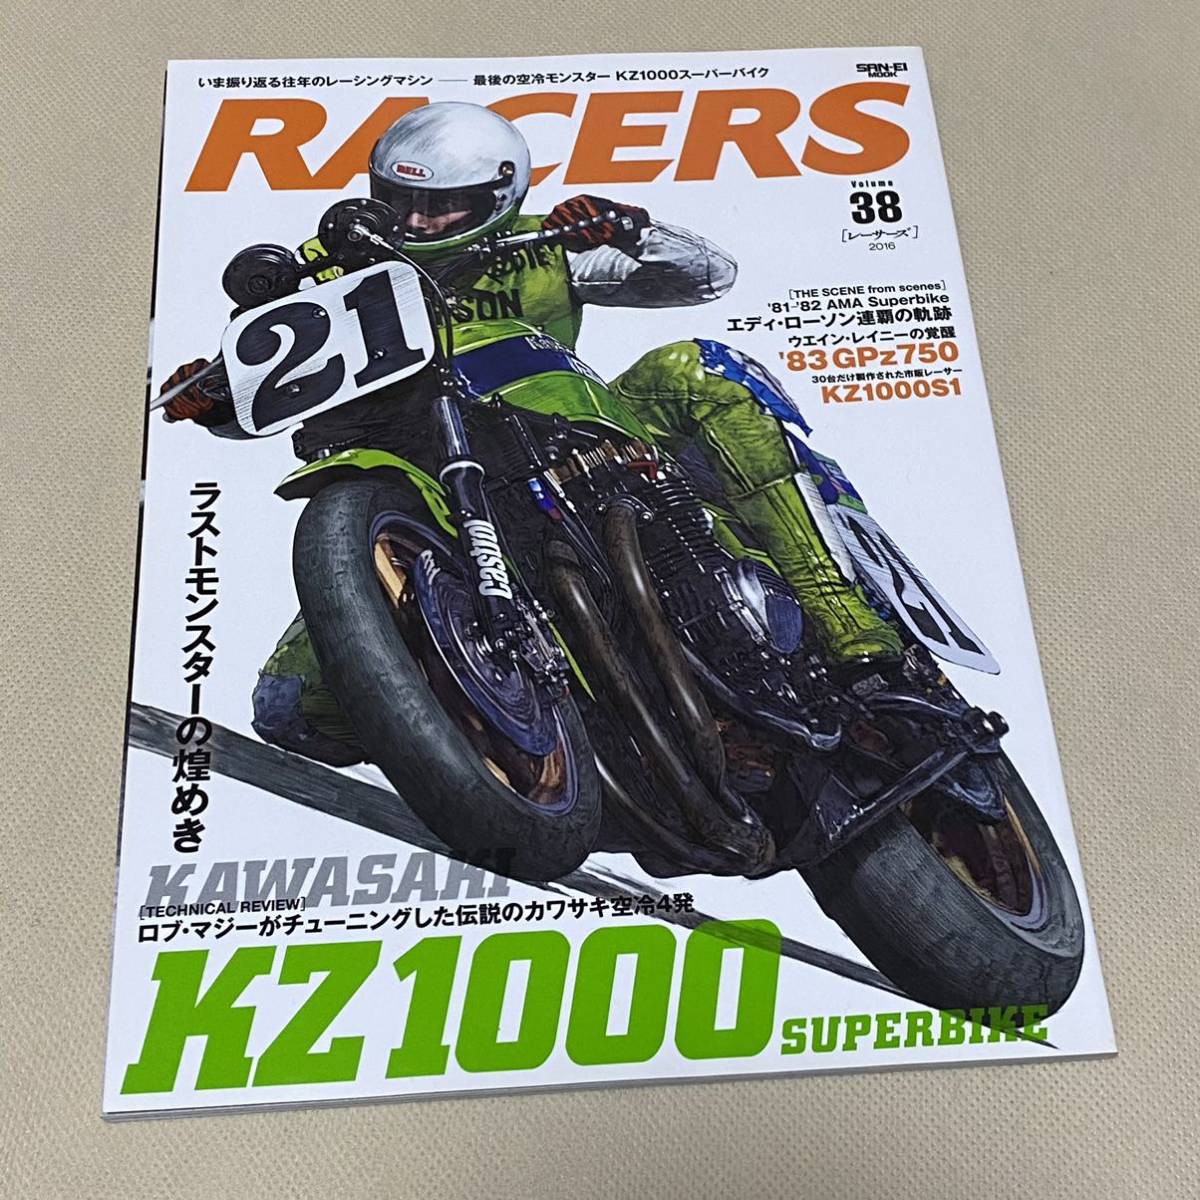 ★RACERS レーサーズ Vol.38 カワサキ KZ1000 AMAスーパーバイク エディローソン Kawasaki ローソンレプリカ マジーレーシング_画像1